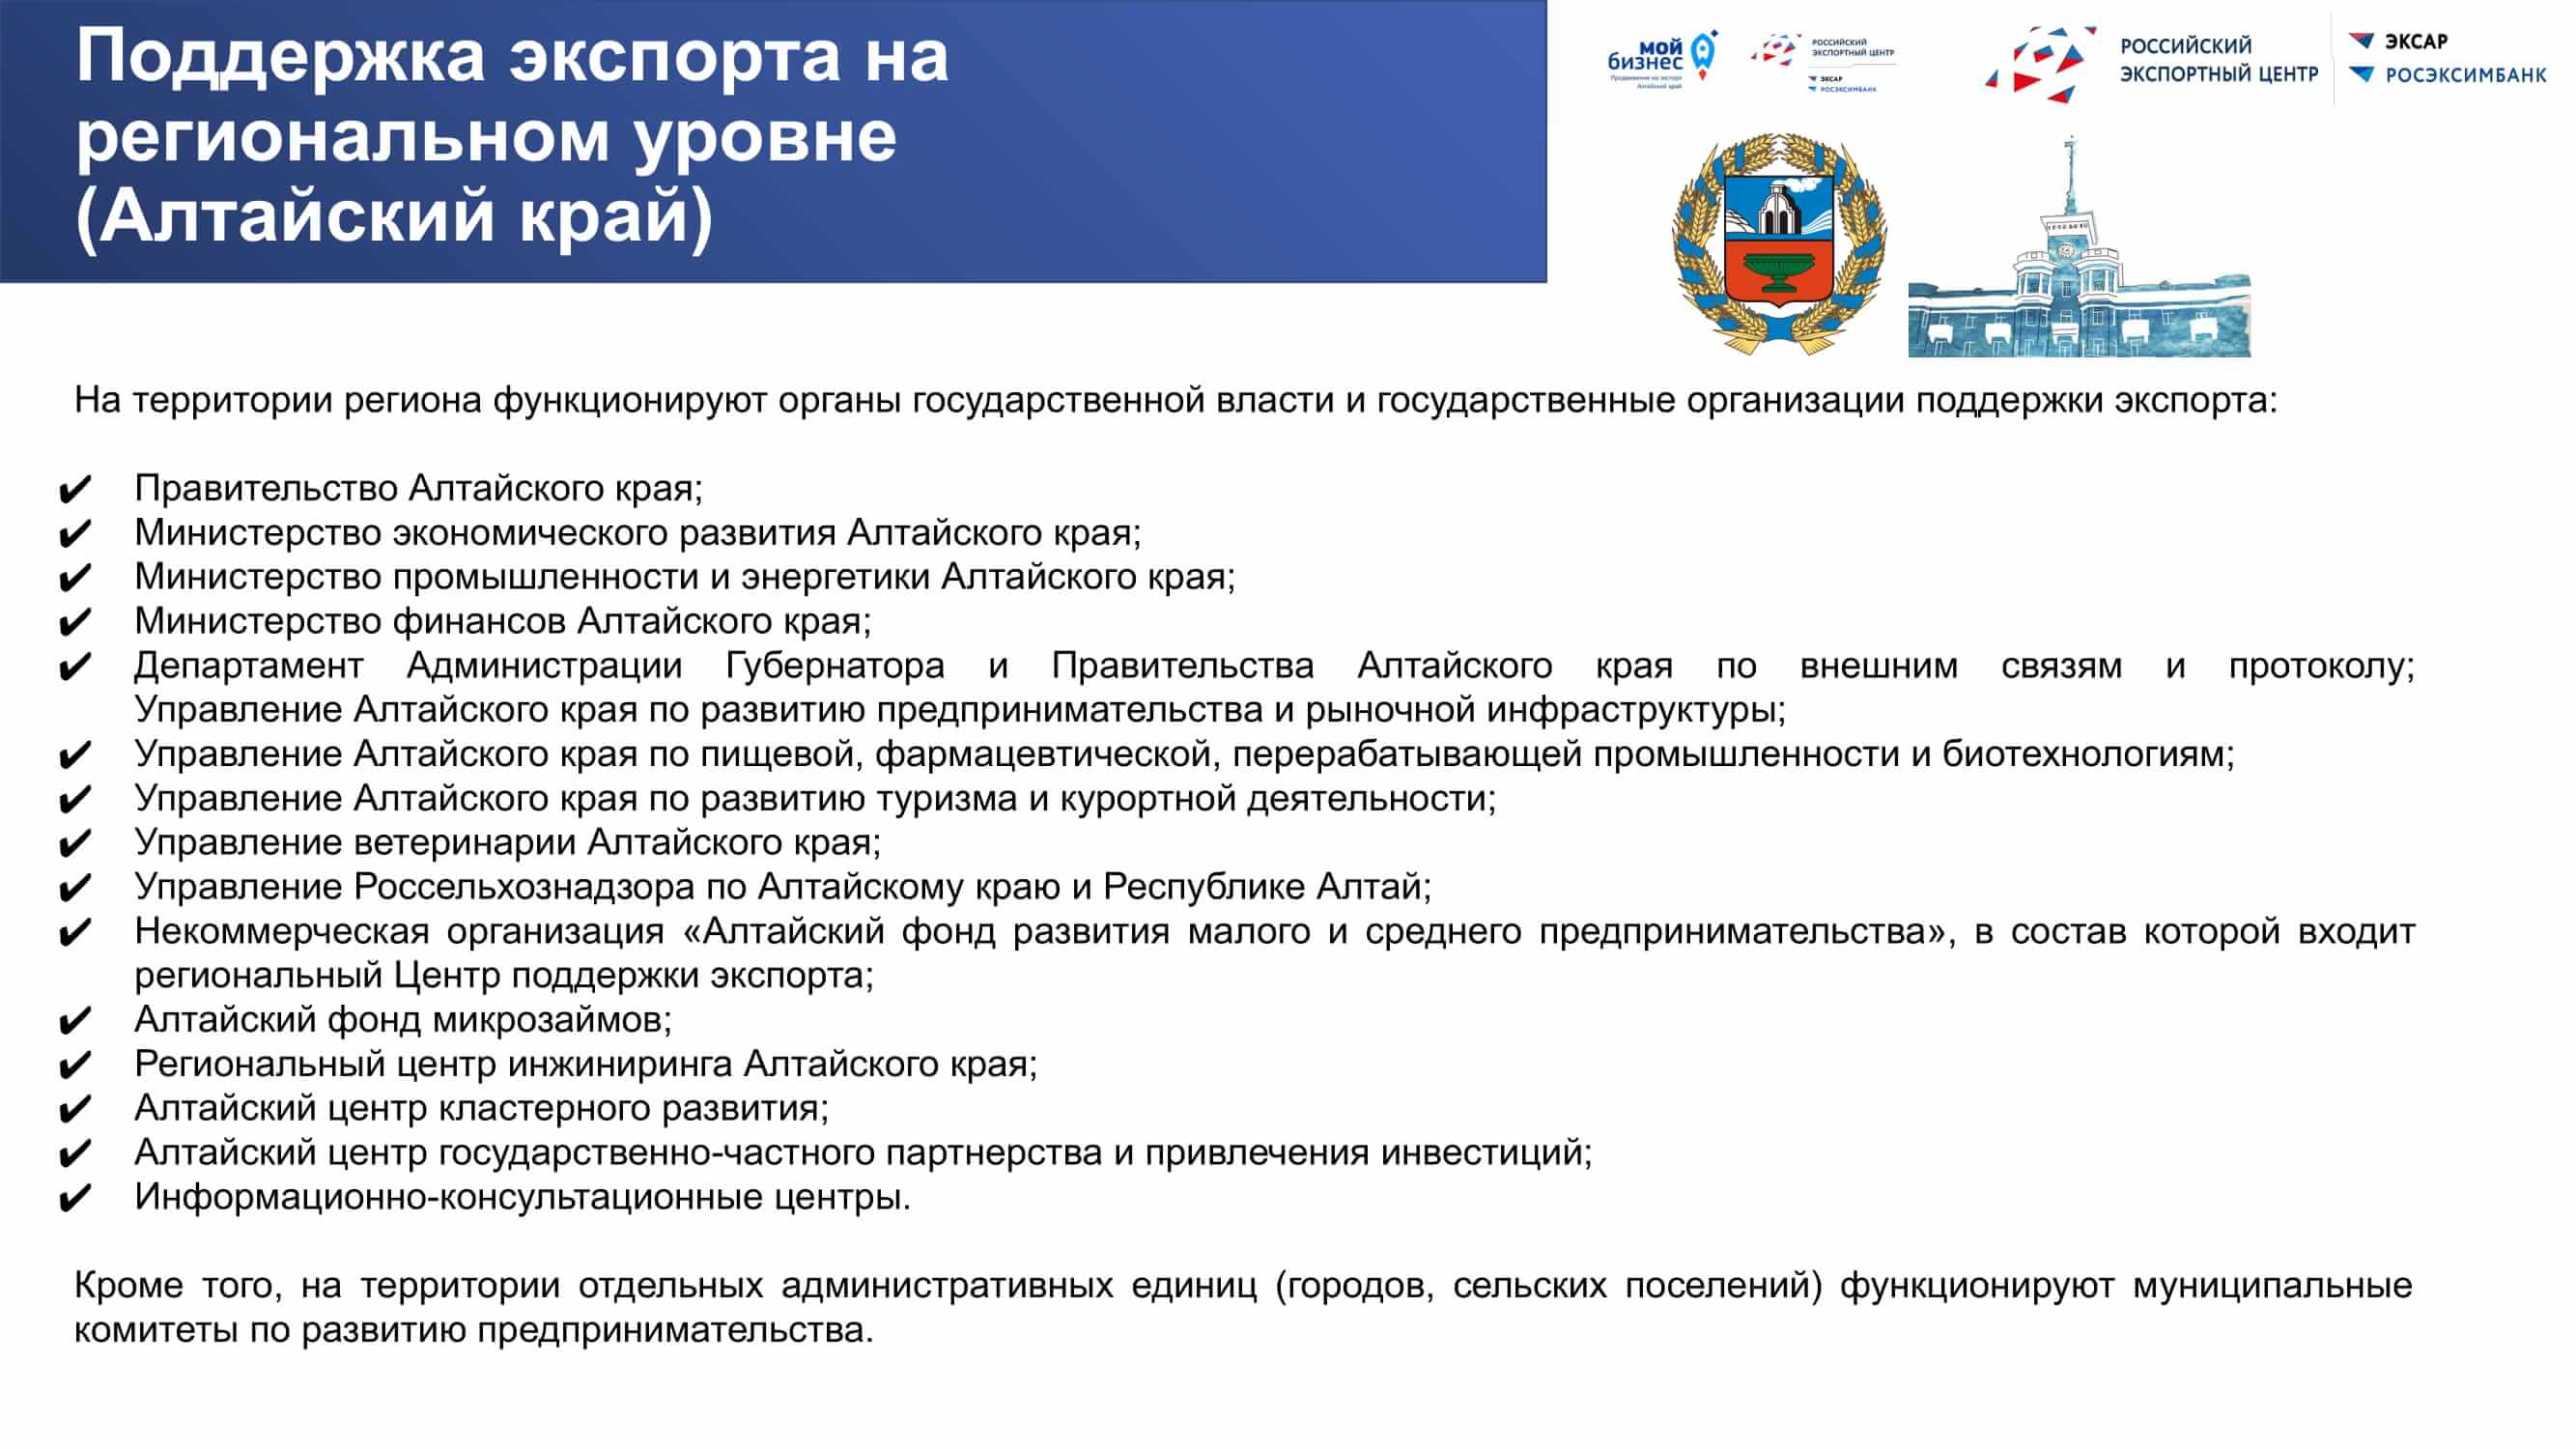 Prezentatsiya-po-vidam-podderzhki-eksporta.pptx_37.jpg